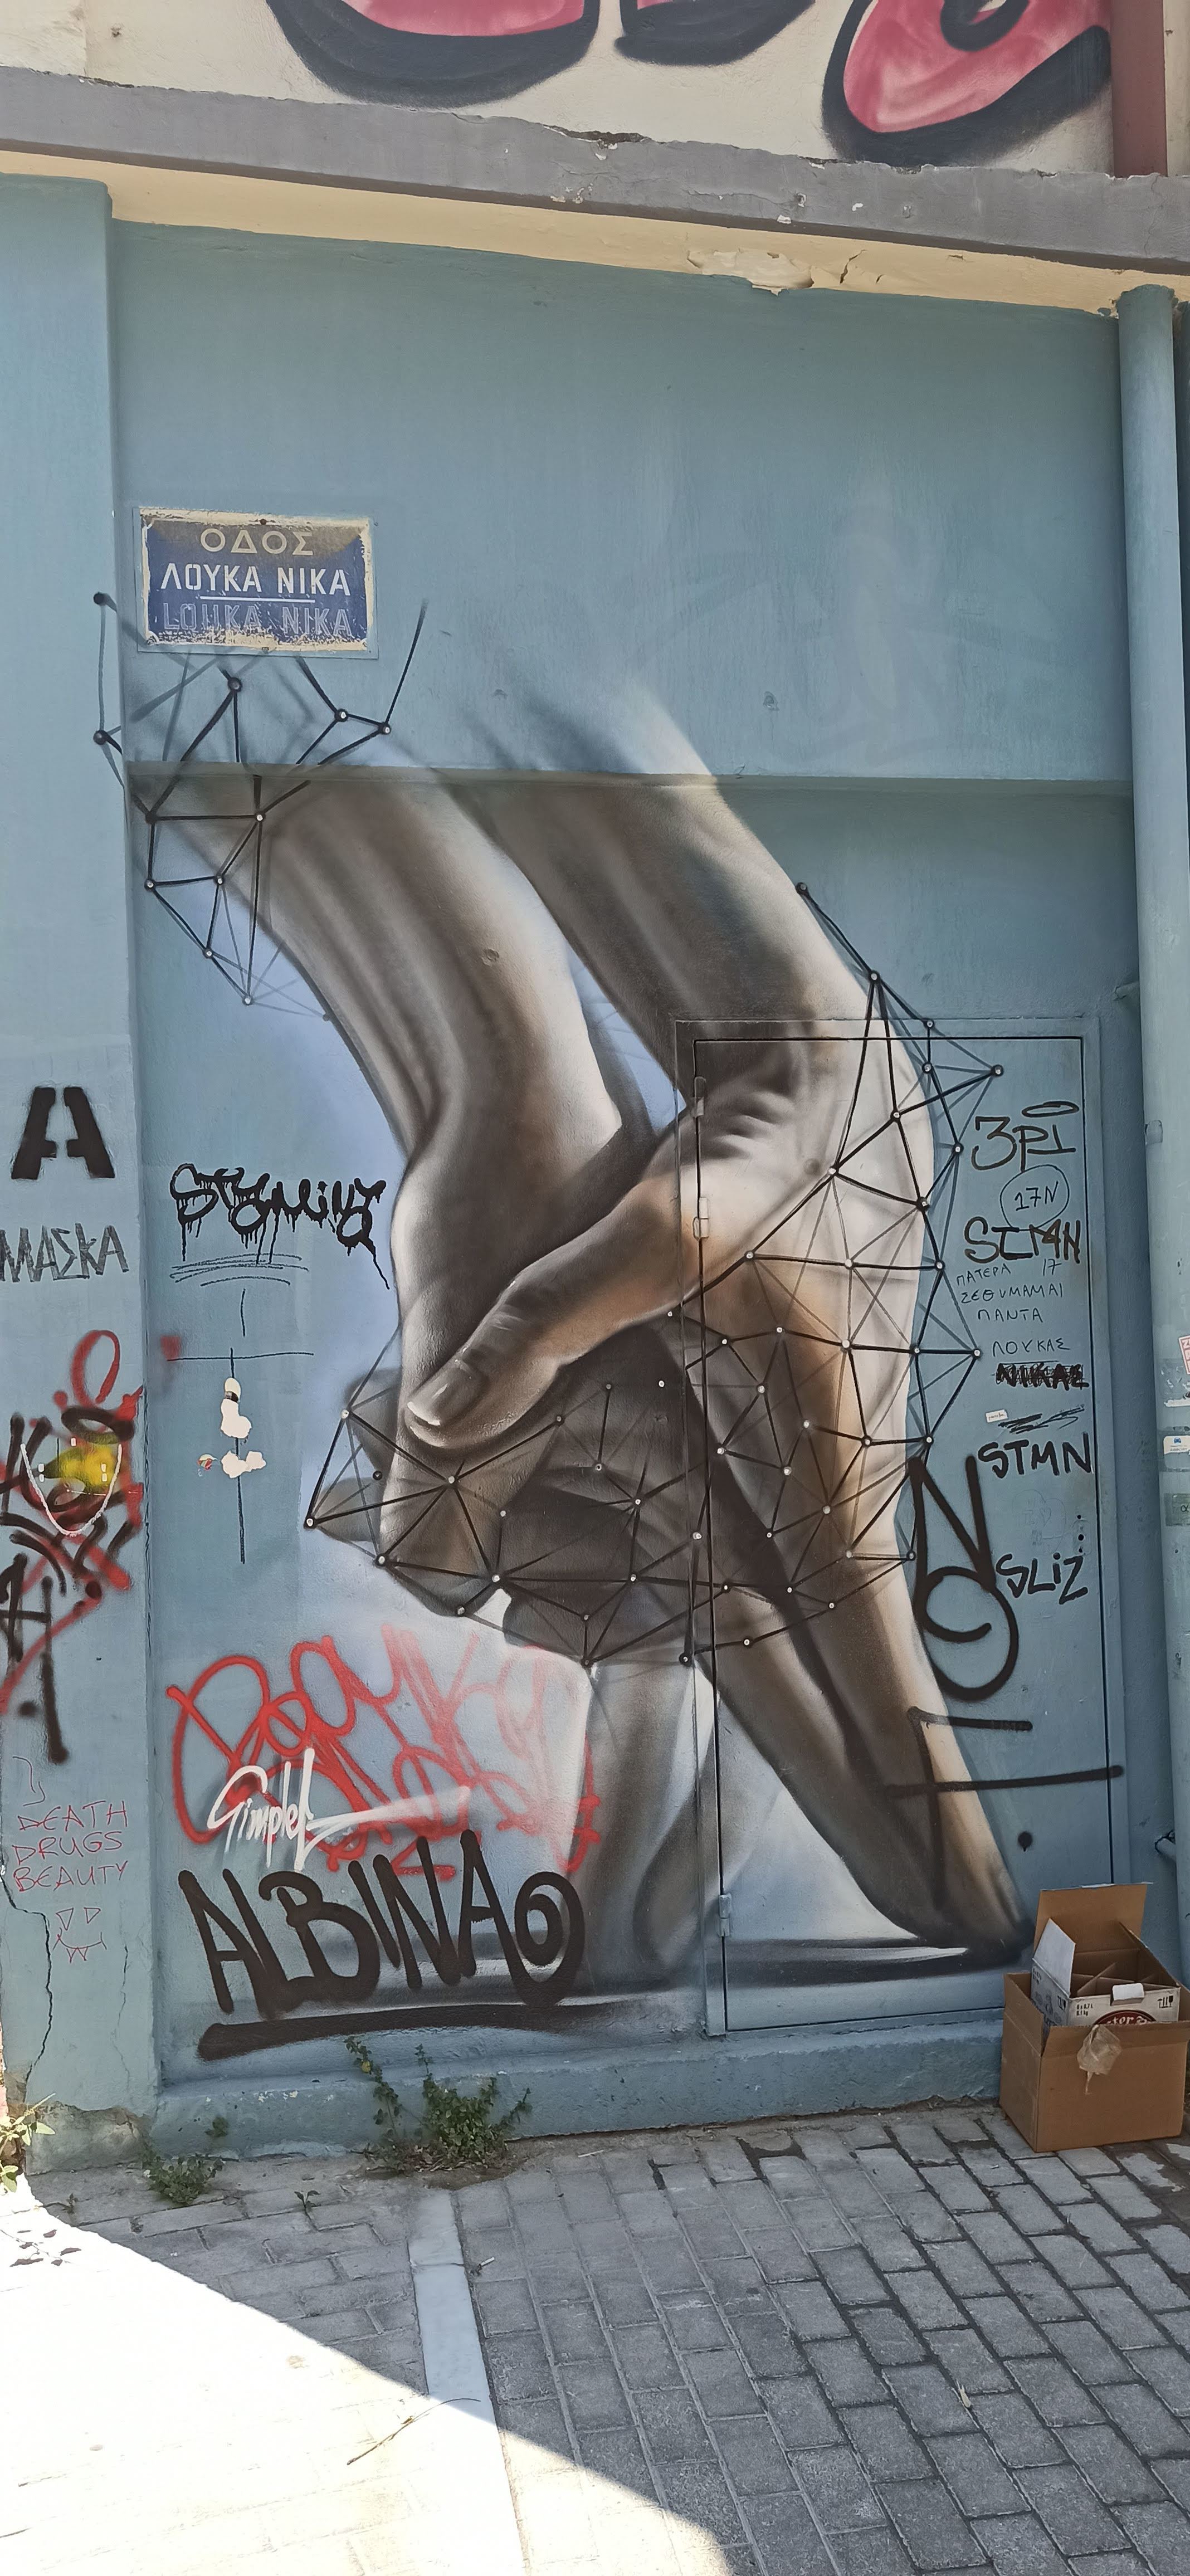 Graffiti 5326  capturé par Rabot à Athina Greece